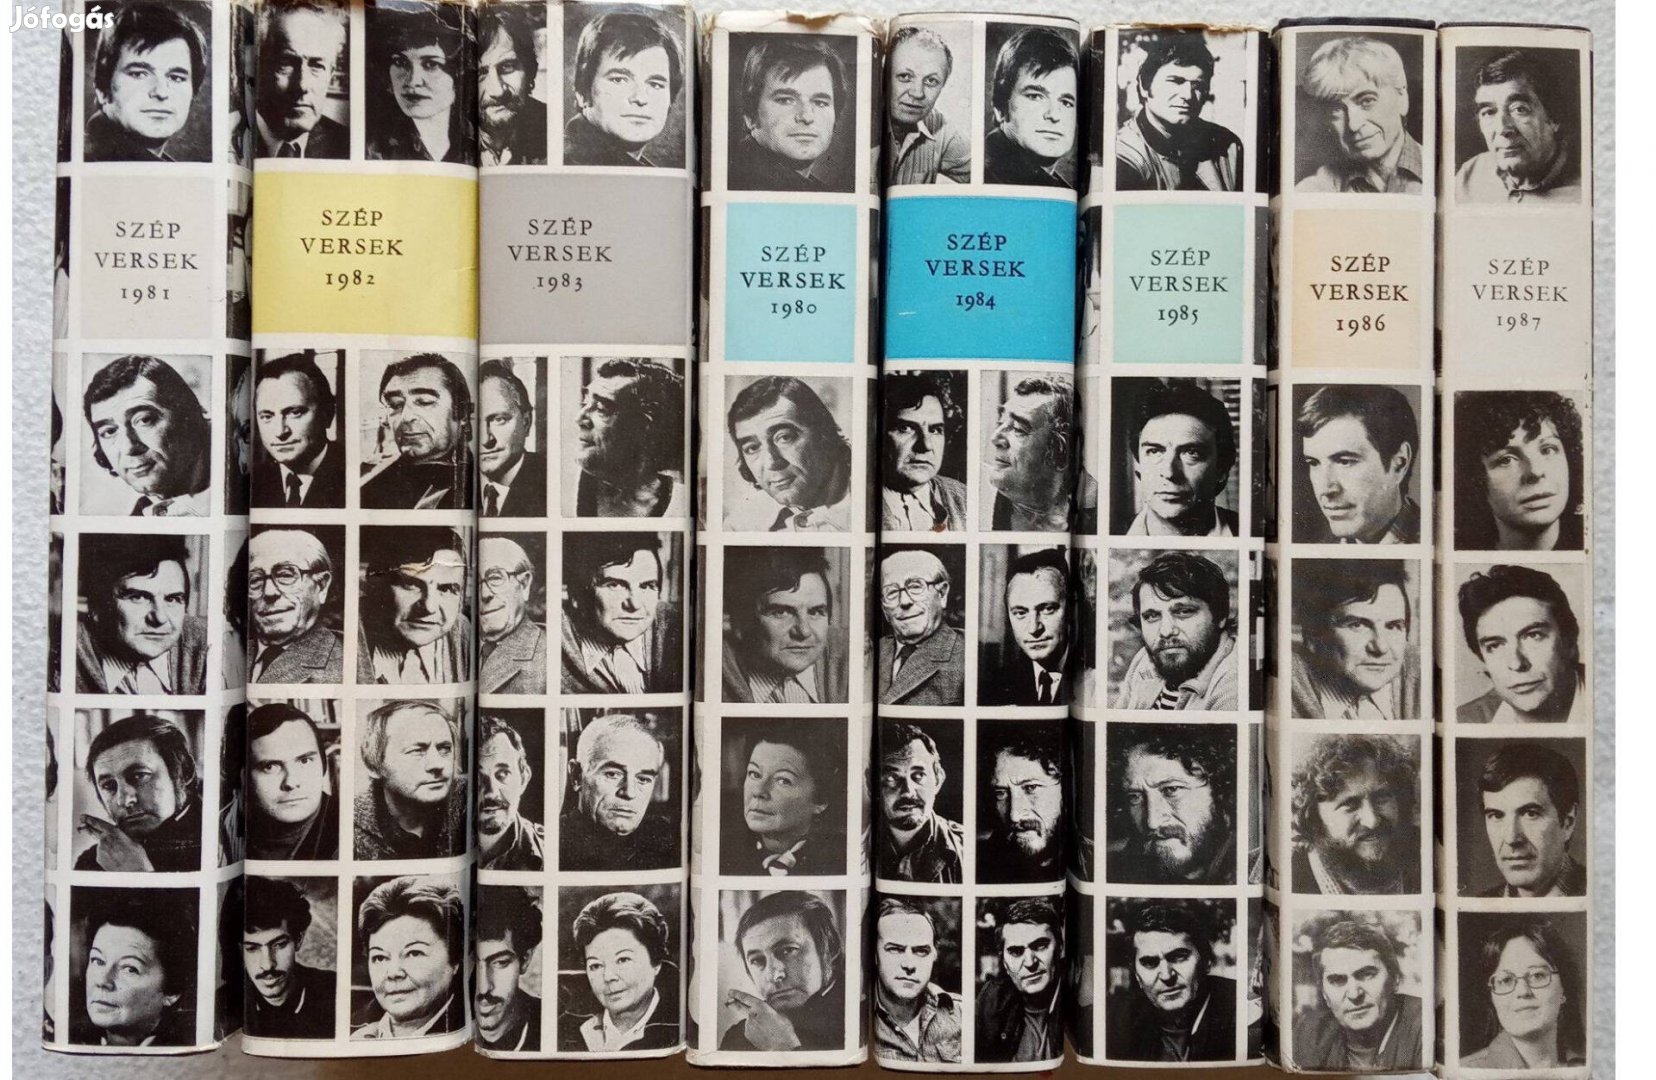 Szép Versek sorozat 1980-1987, 8 kötet